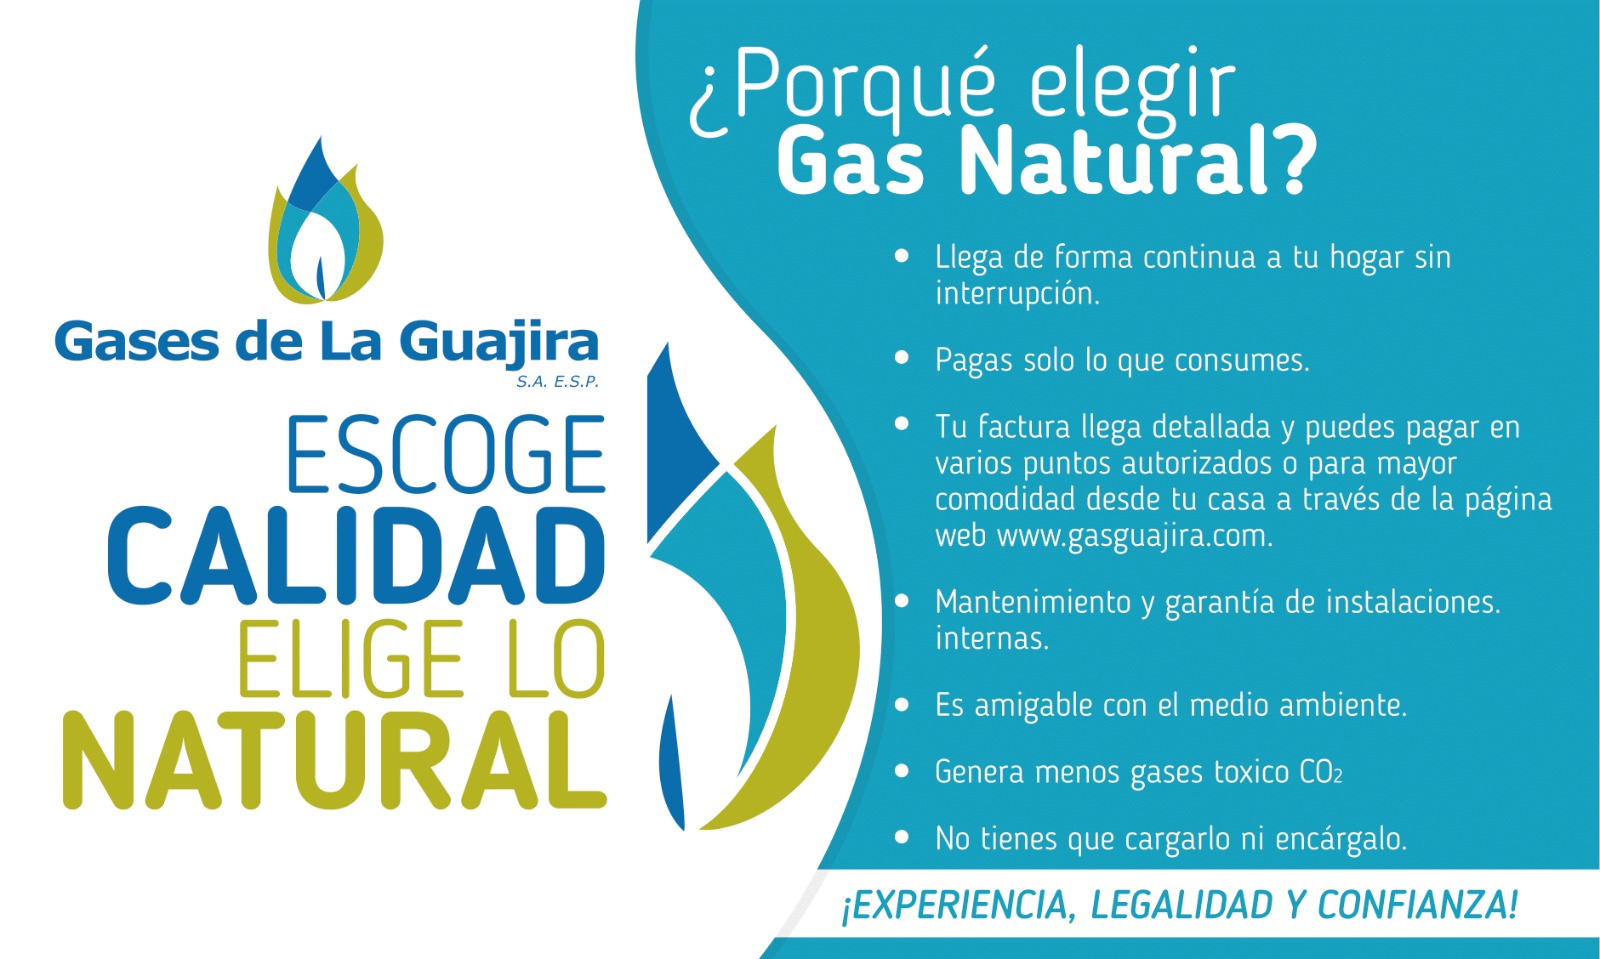 Porqué elegir gas natural